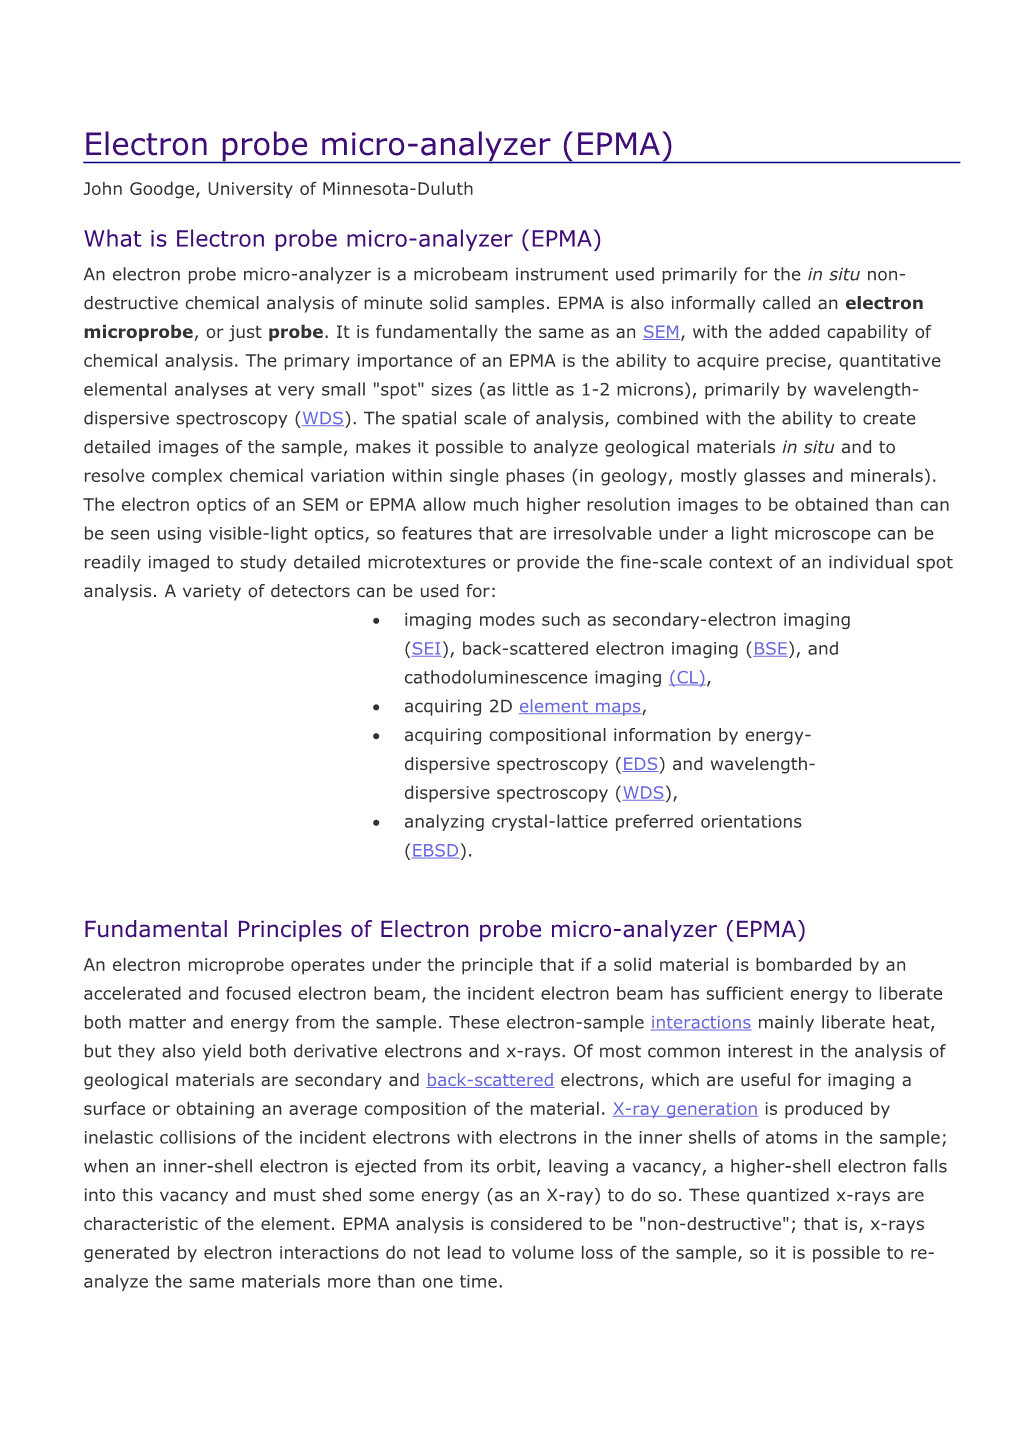 Electron Probe Micro-Analyzer (EPMA)